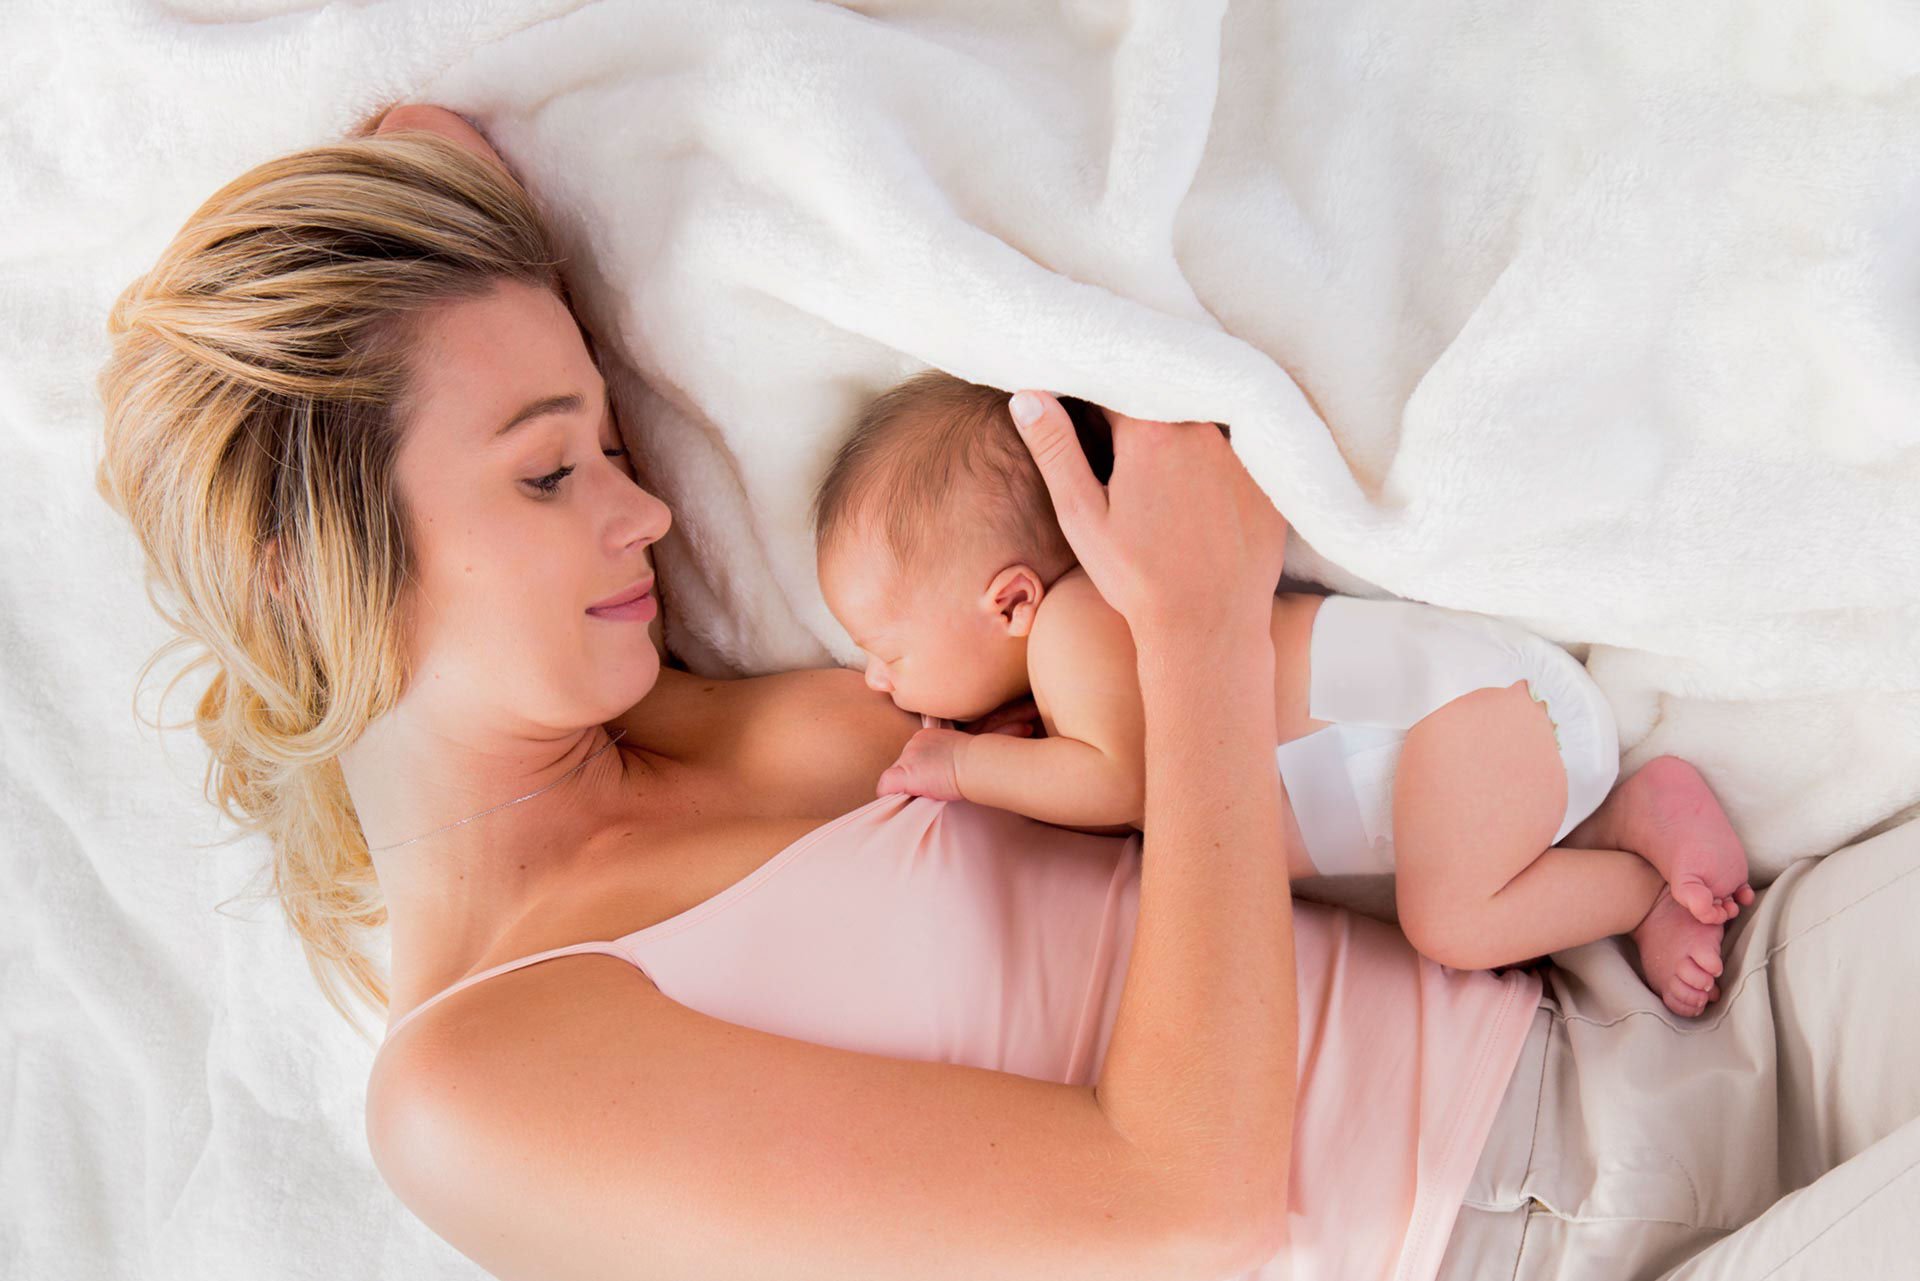 Winny - Lactancia materna: la mejor alimentación para tu bebé